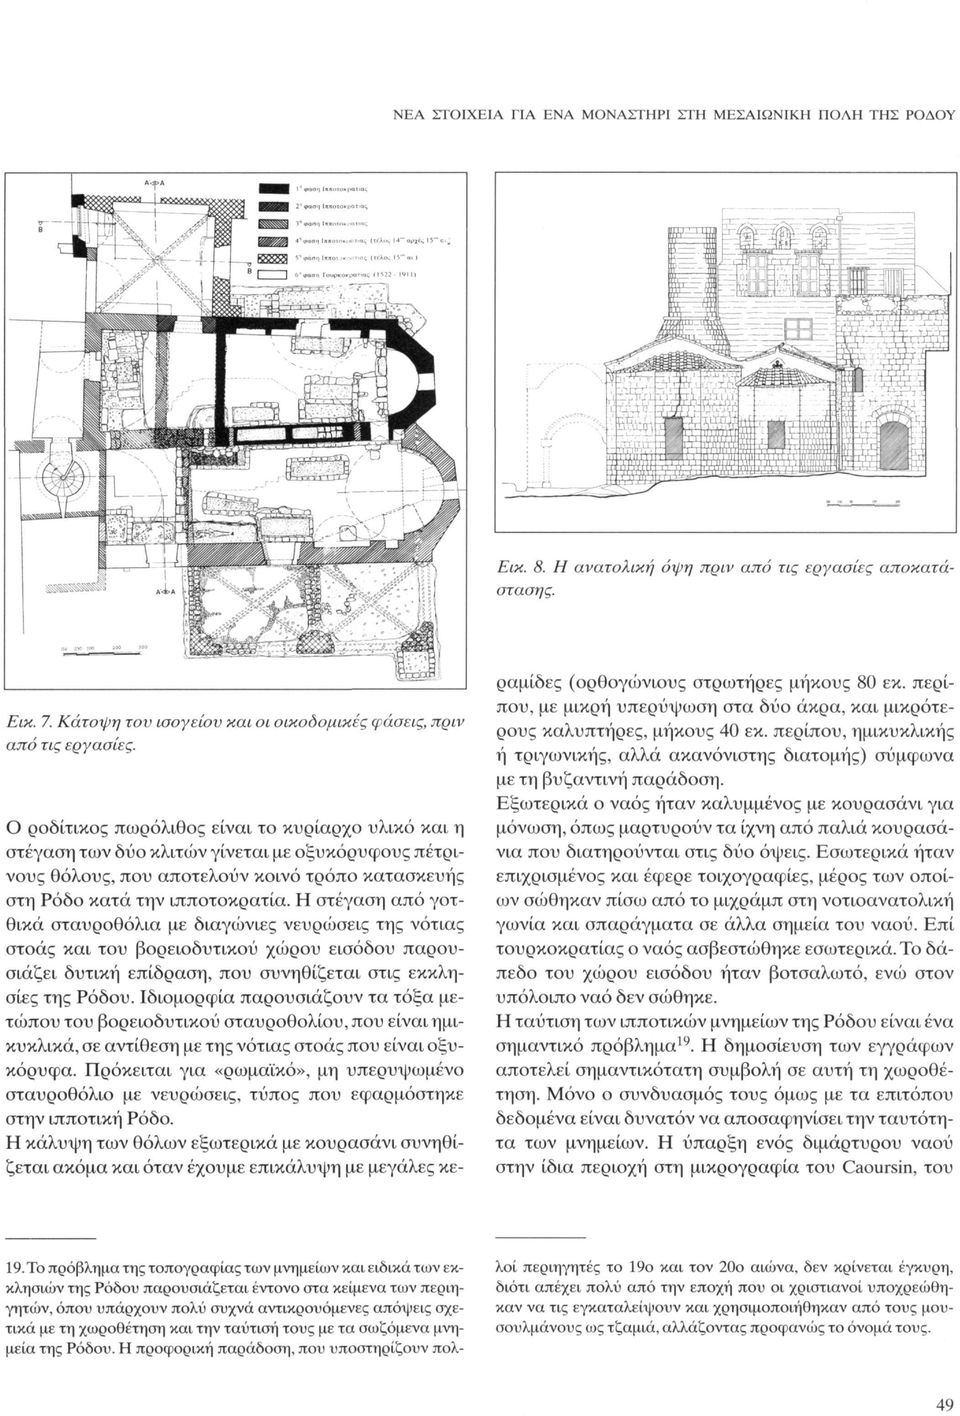 Η στέγαση από γοτθικά σταυροθόλια με διαγώνιες νευρώσεις της νότιας στοάς και του βορειοδυτικού χώρου εισόδου παρουσιάζει δυτική επίδραση, που συνηθίζεται στις εκκλησίες της Ρόδου.